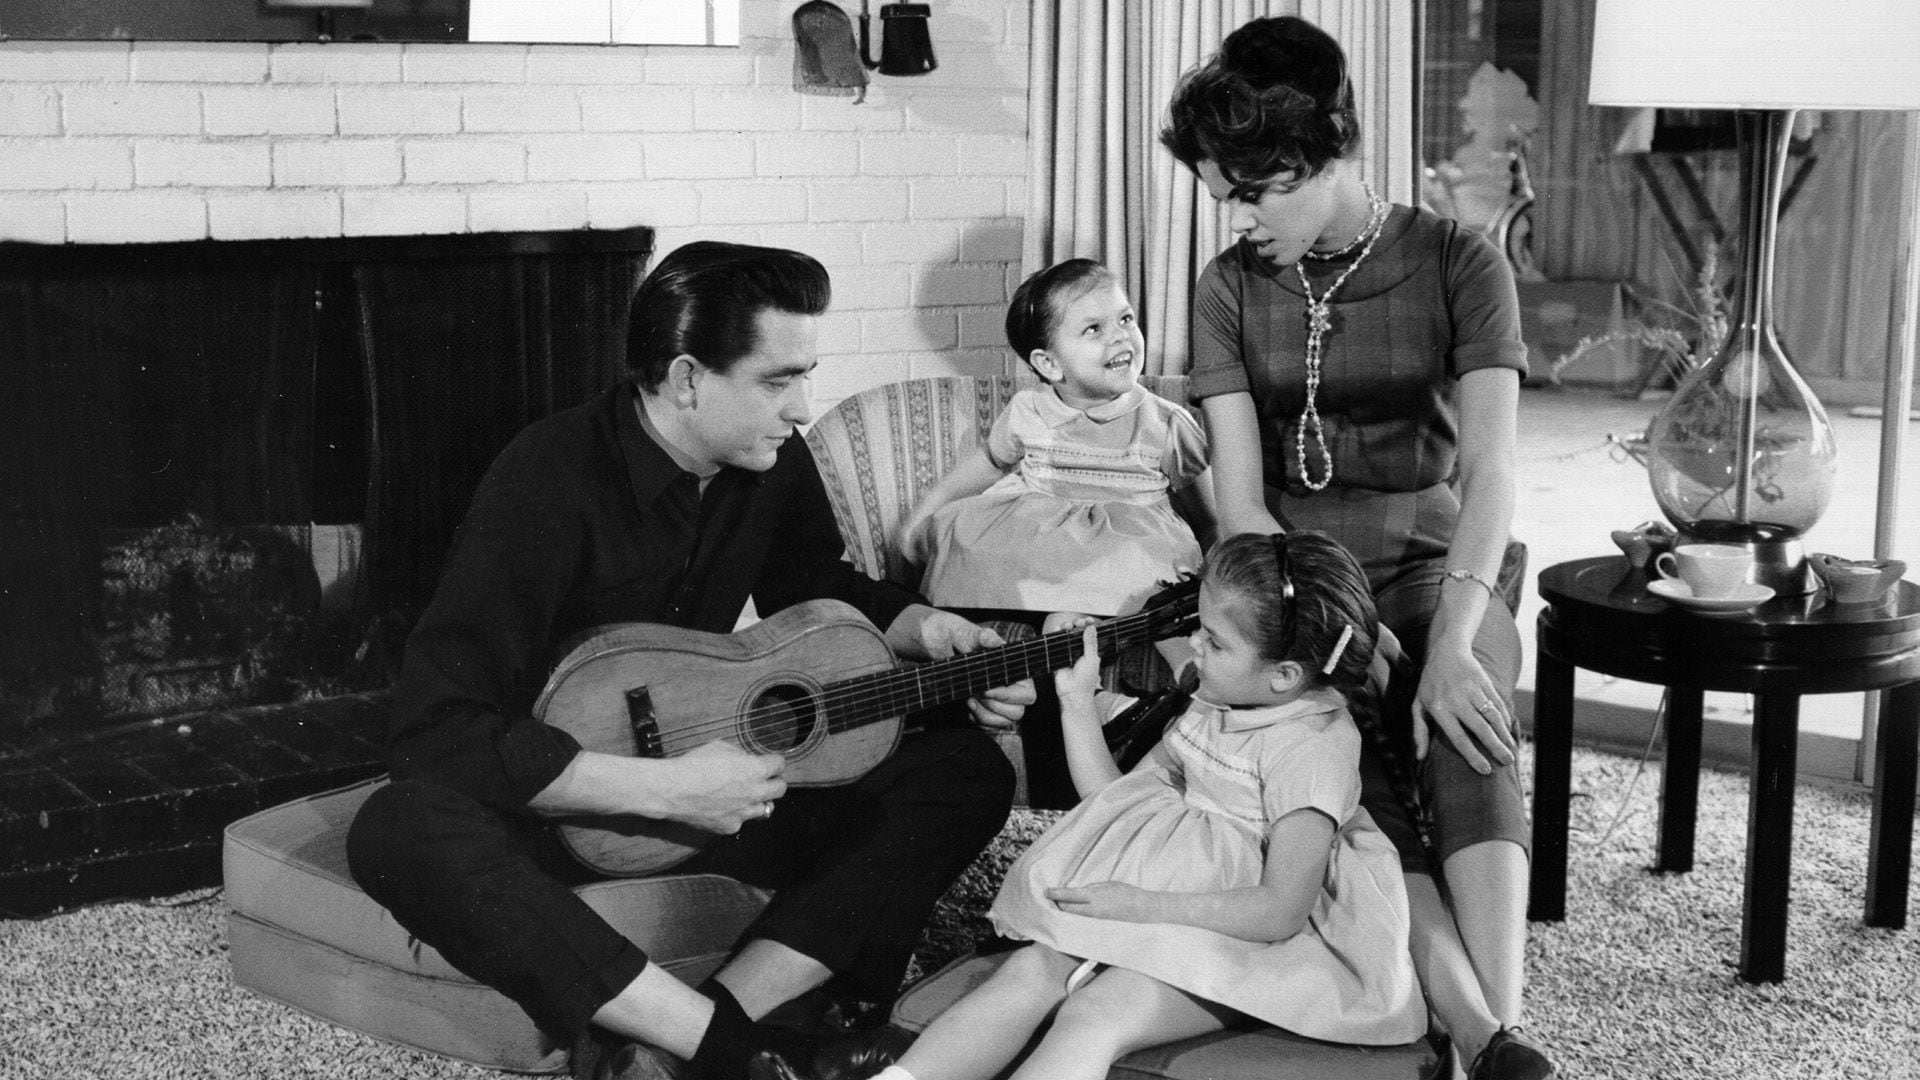 El cantante y compositor de música country Johnny Cash con una guitarra mientras su primera esposa, Vivian Liberto, y sus hijas, Rosanne y Kathy comparten un momento distendido, en 1957 (Michael Ochs Archives/Getty Images)
